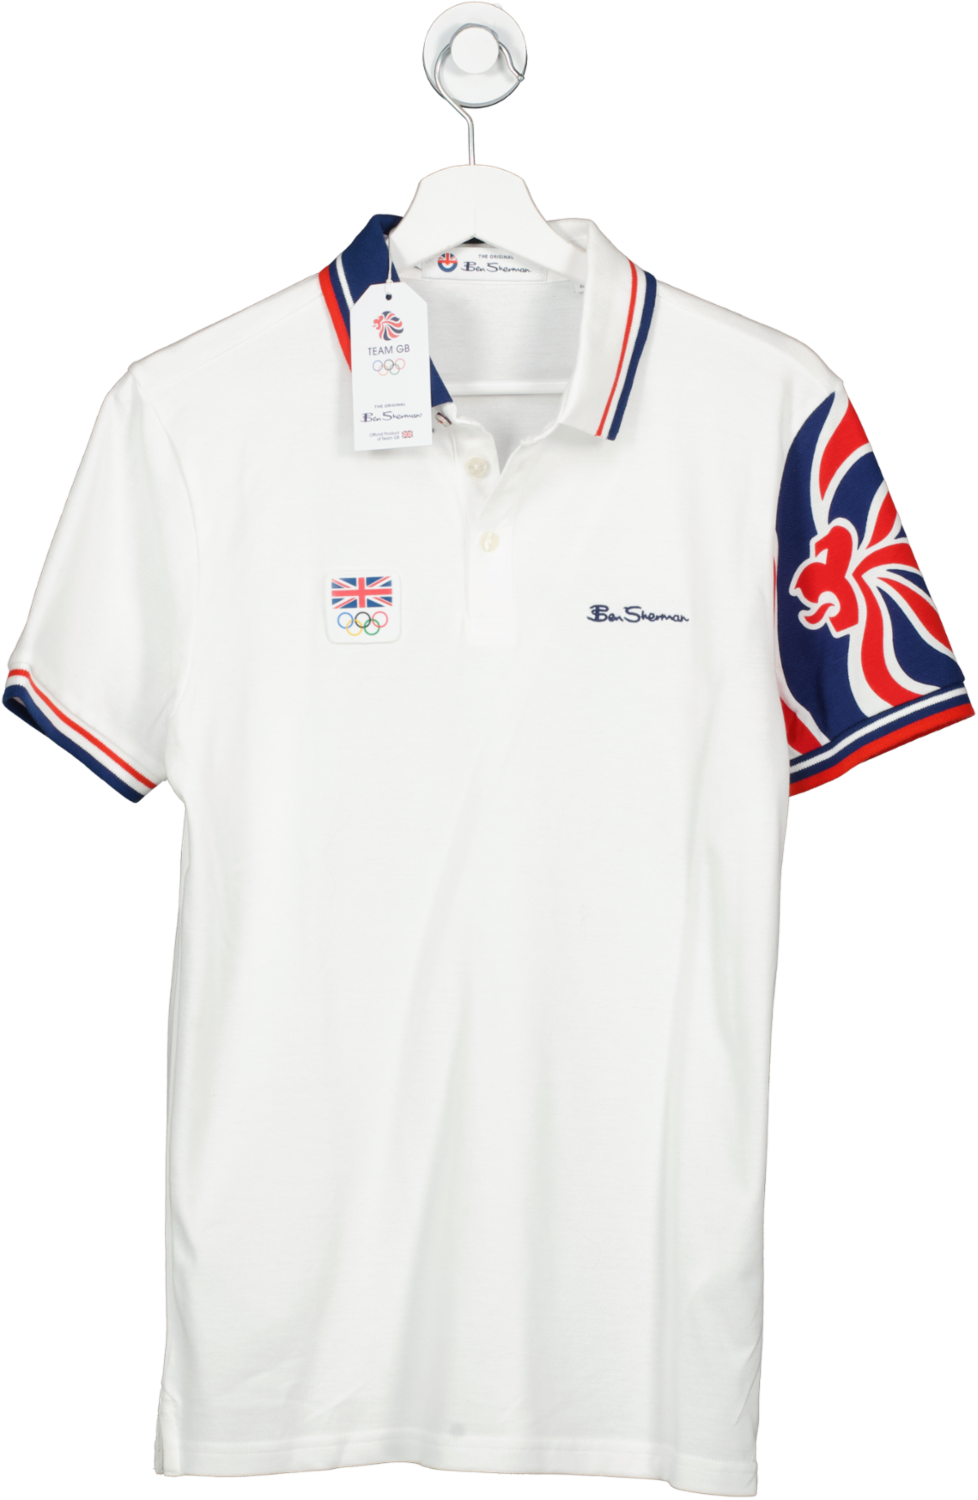 Ben Sherman White Team Gb Shirt UK S